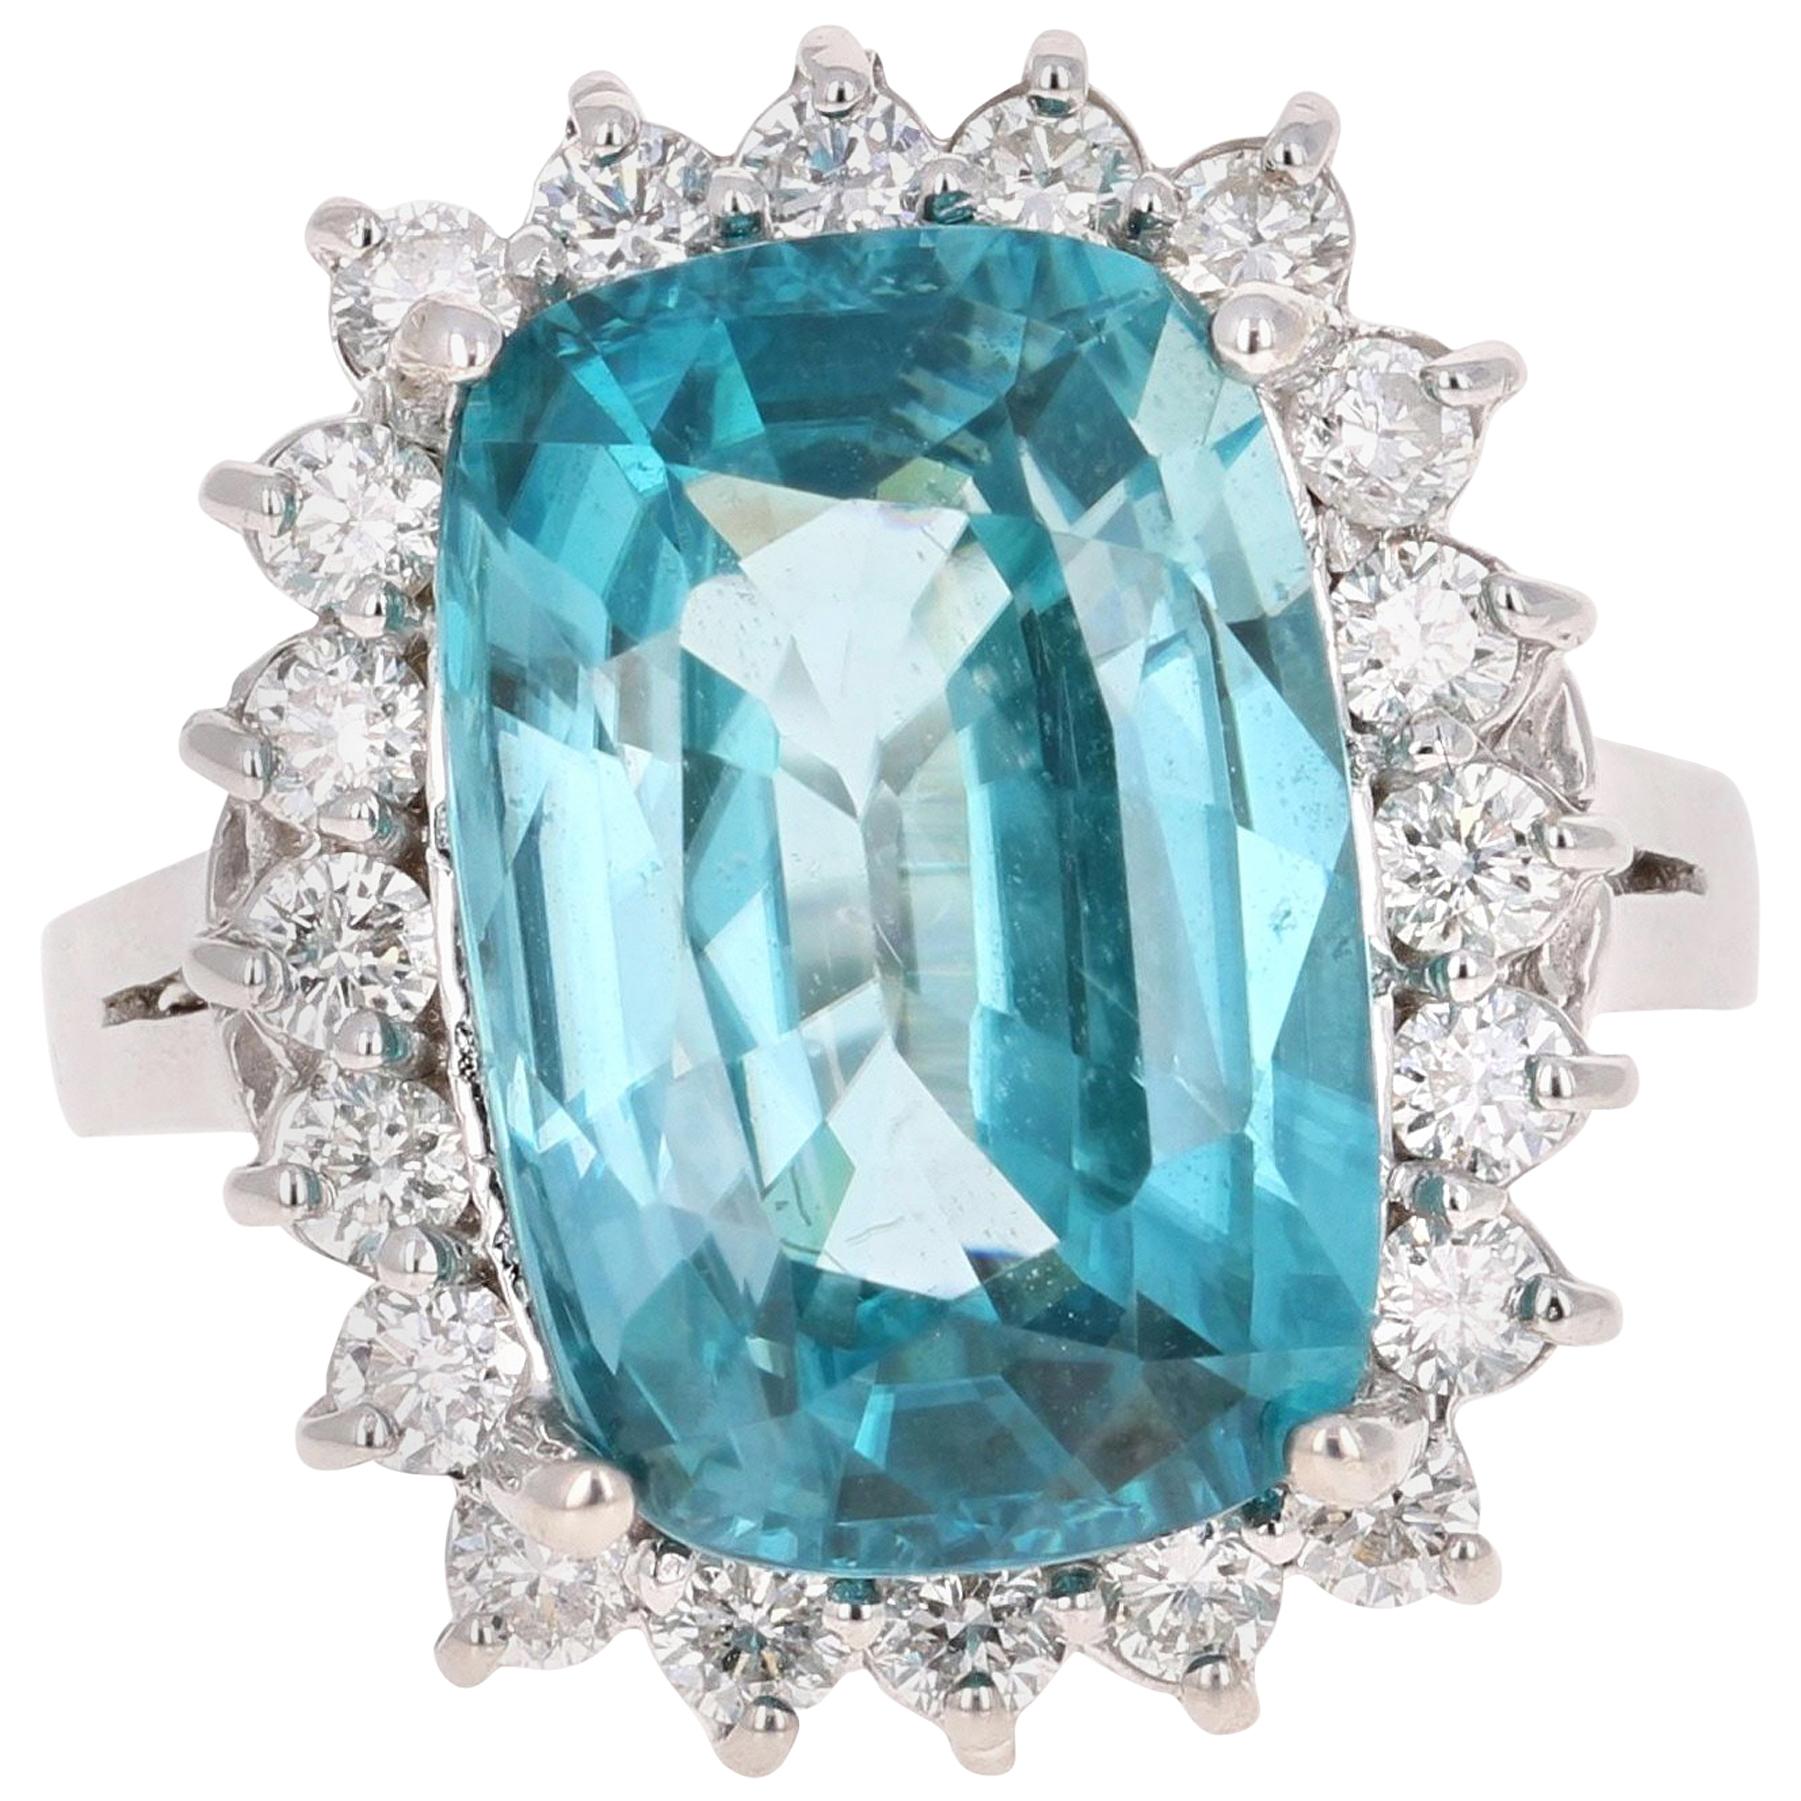 10.00 Carat Blue Zircon Diamond White Gold Engagement Ring 14 Karat White Gold